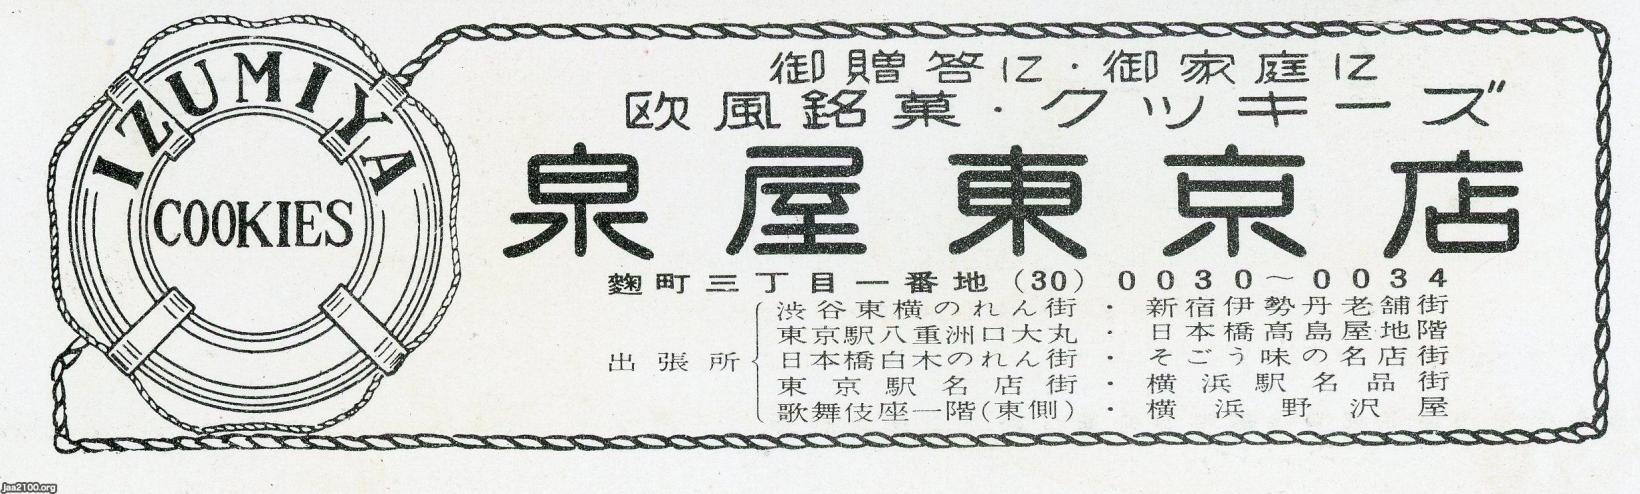 デパート 昭和32年 デパート地下売場 泉屋クッキー ジャパンアーカイブズ Japan Archives